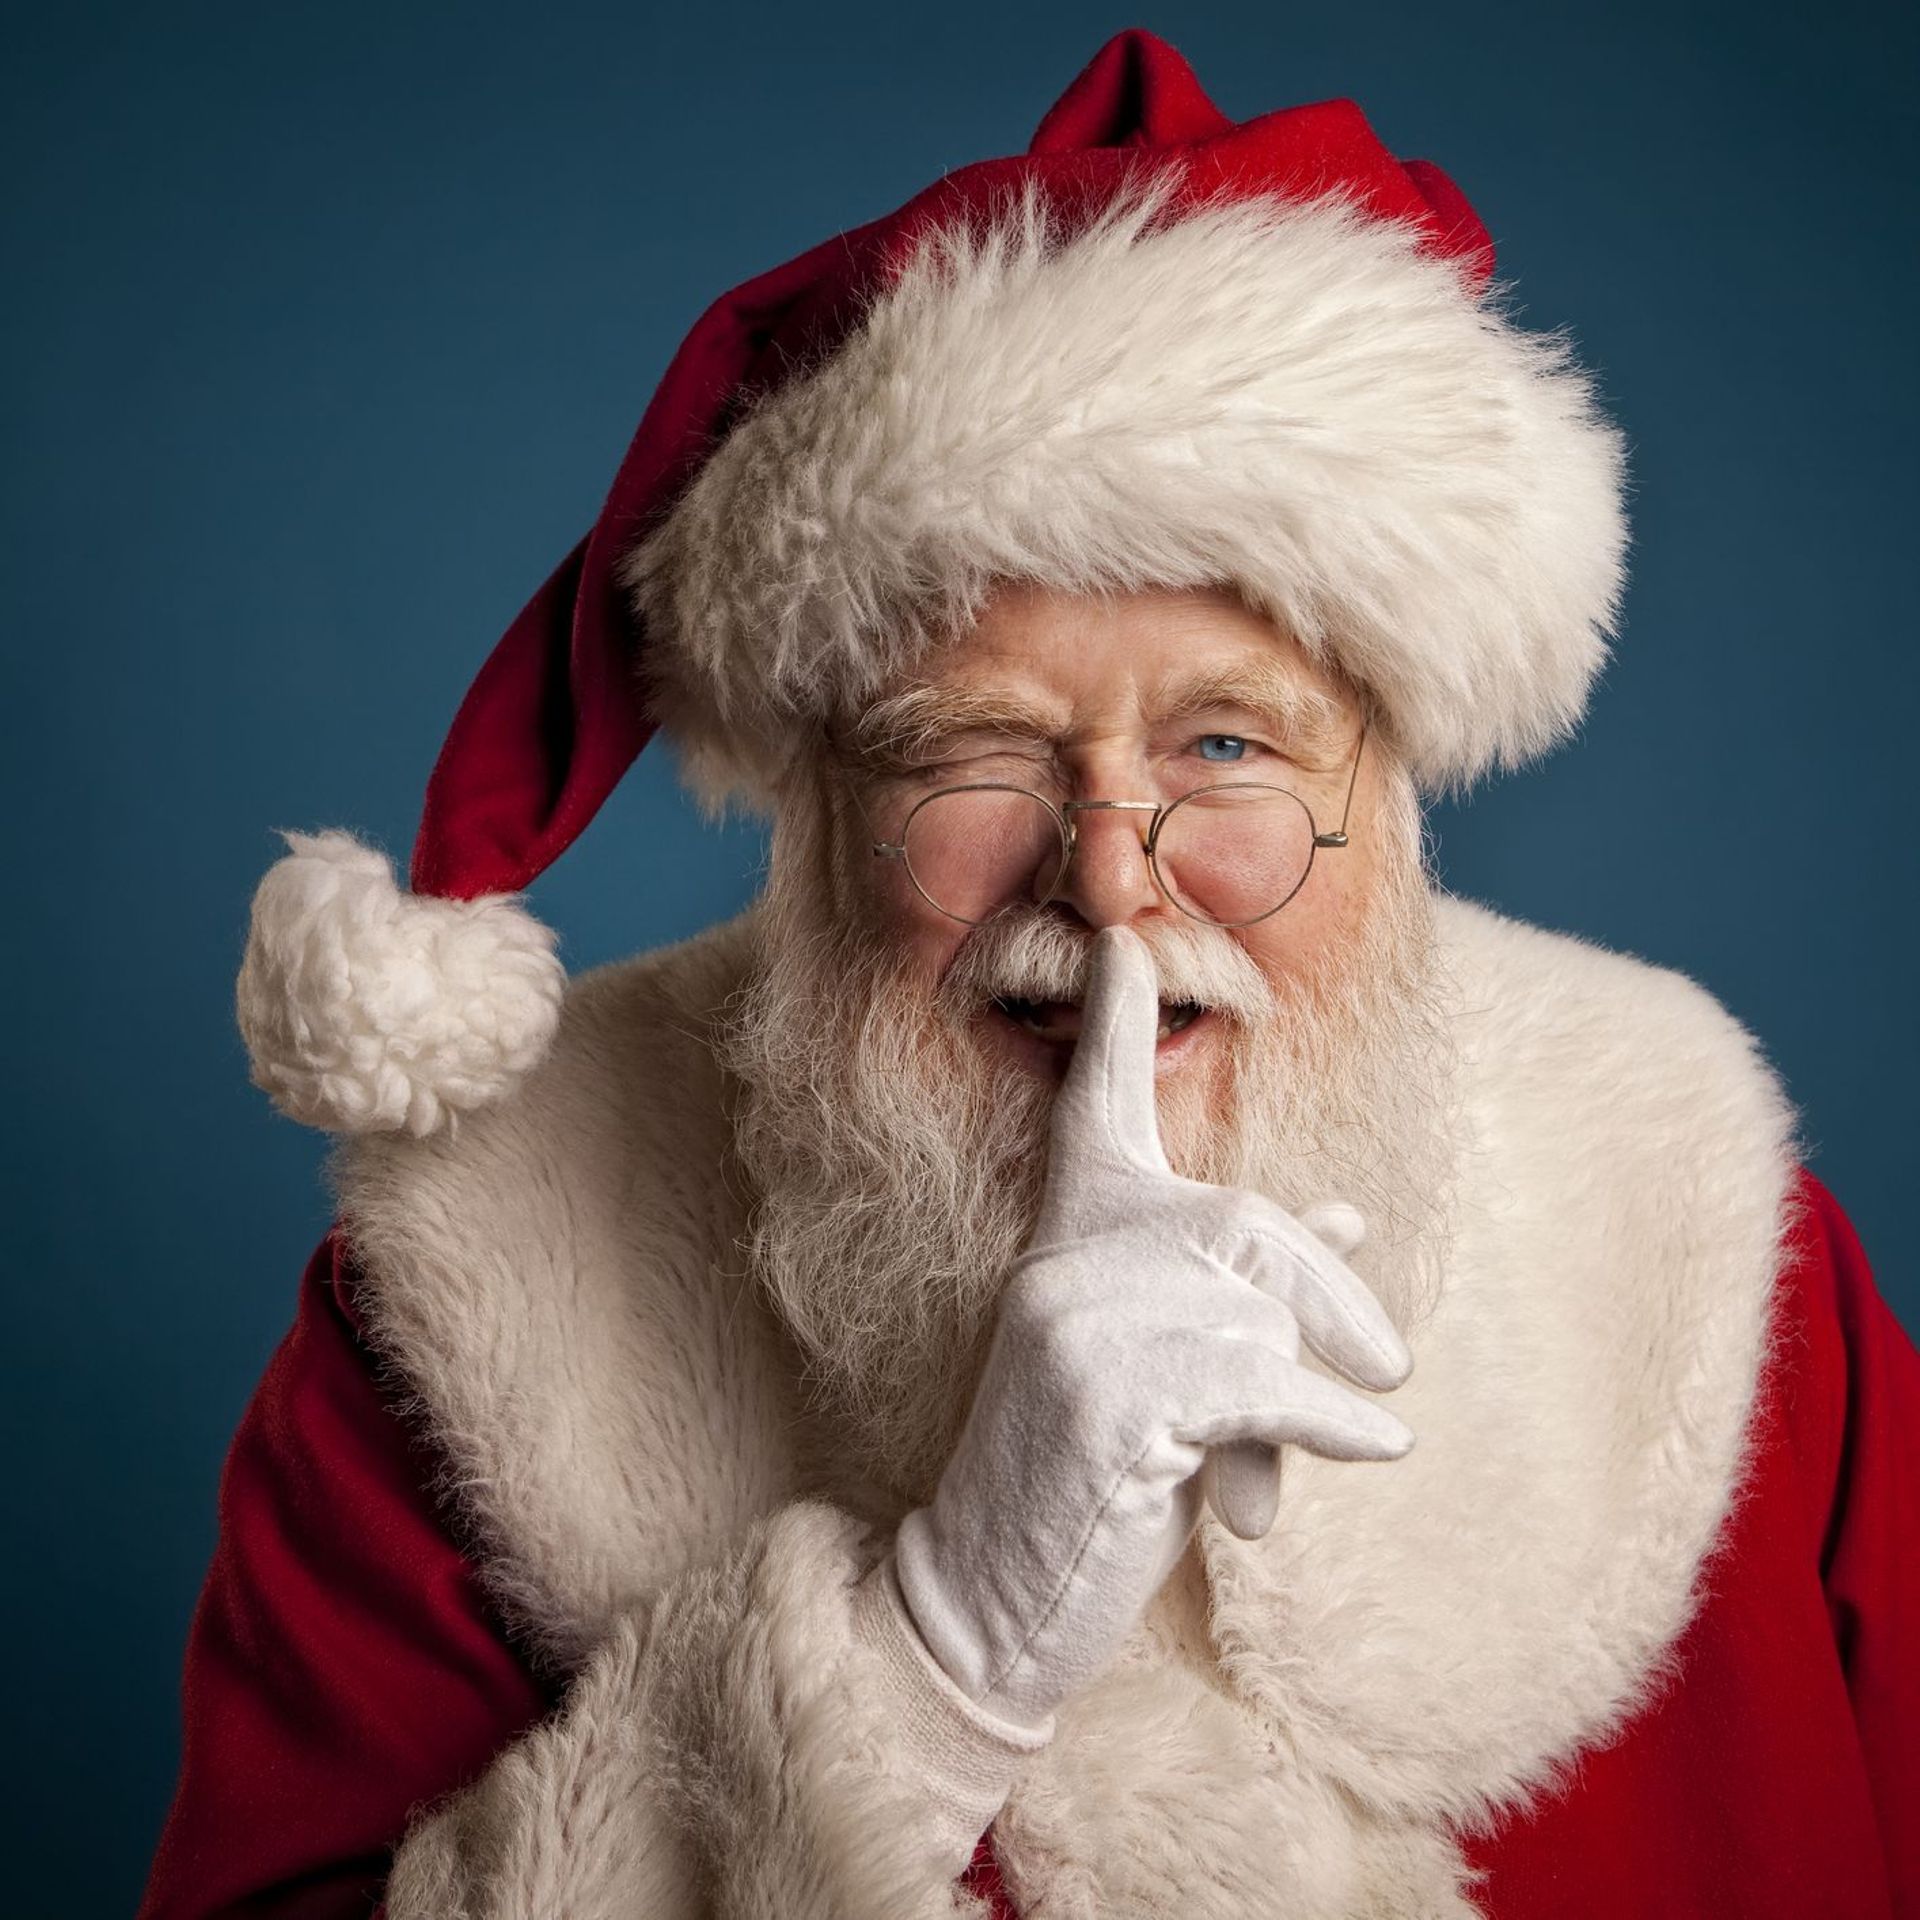 Jusqu'à quel âge un enfant croit-il au Père Noël ?